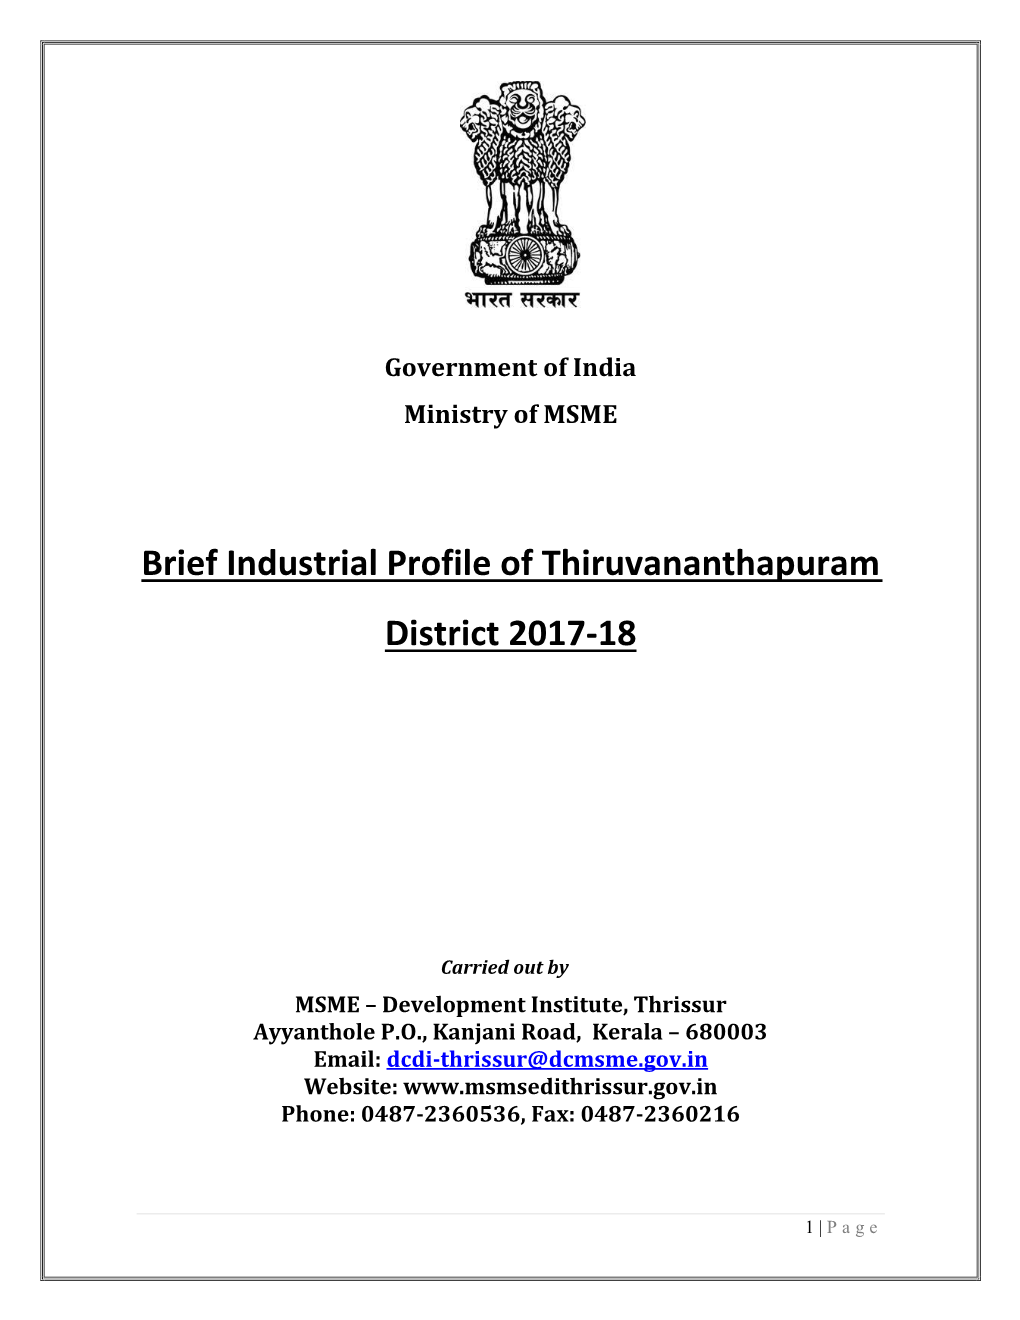 Brief Industrial Profile of Thiruvananthapuram District 2017-18